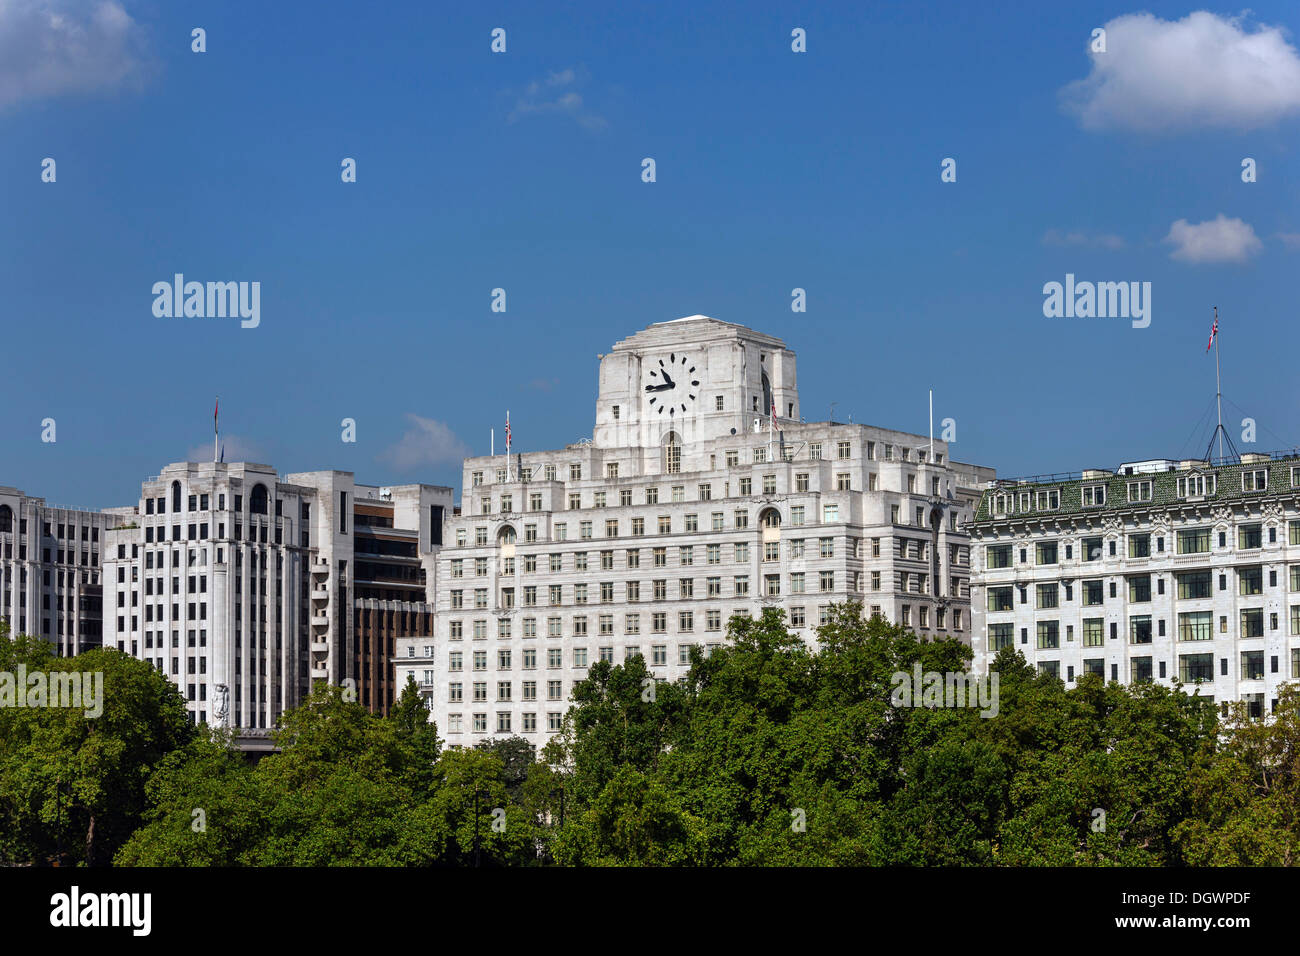 Adelphi Gebäude, Shell Mex Haus und Savoy Hotel am Nordufer der Themse, London, England, Vereinigtes Königreich, Europa Stockfoto